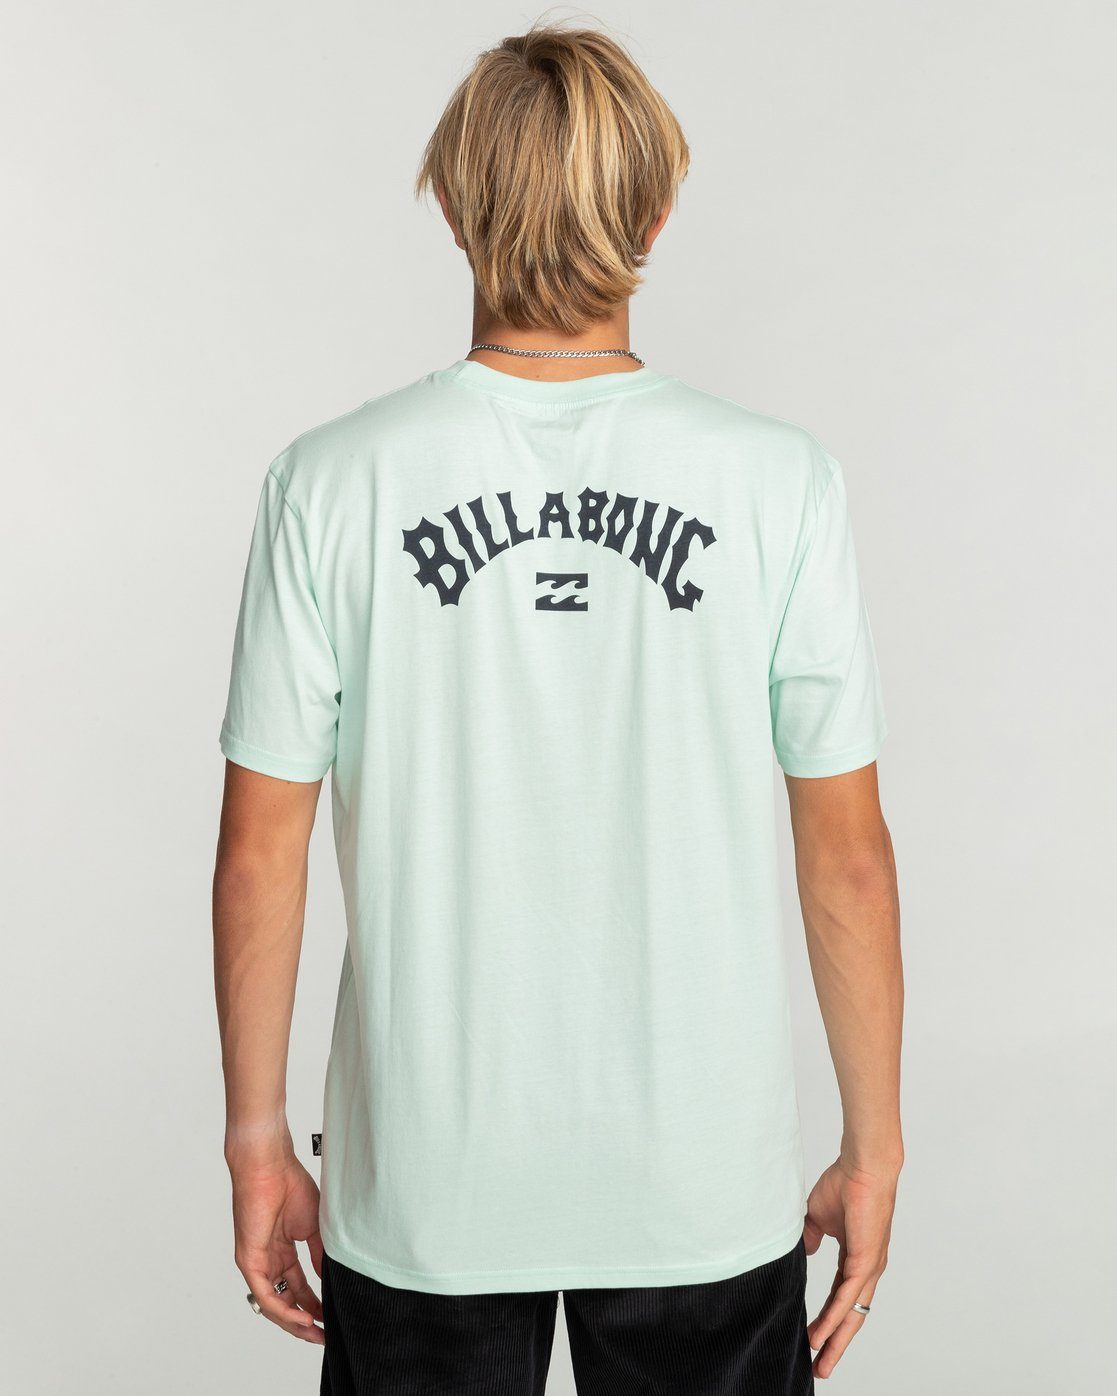 Wave Billabong Seaglass Arch T-Shirt